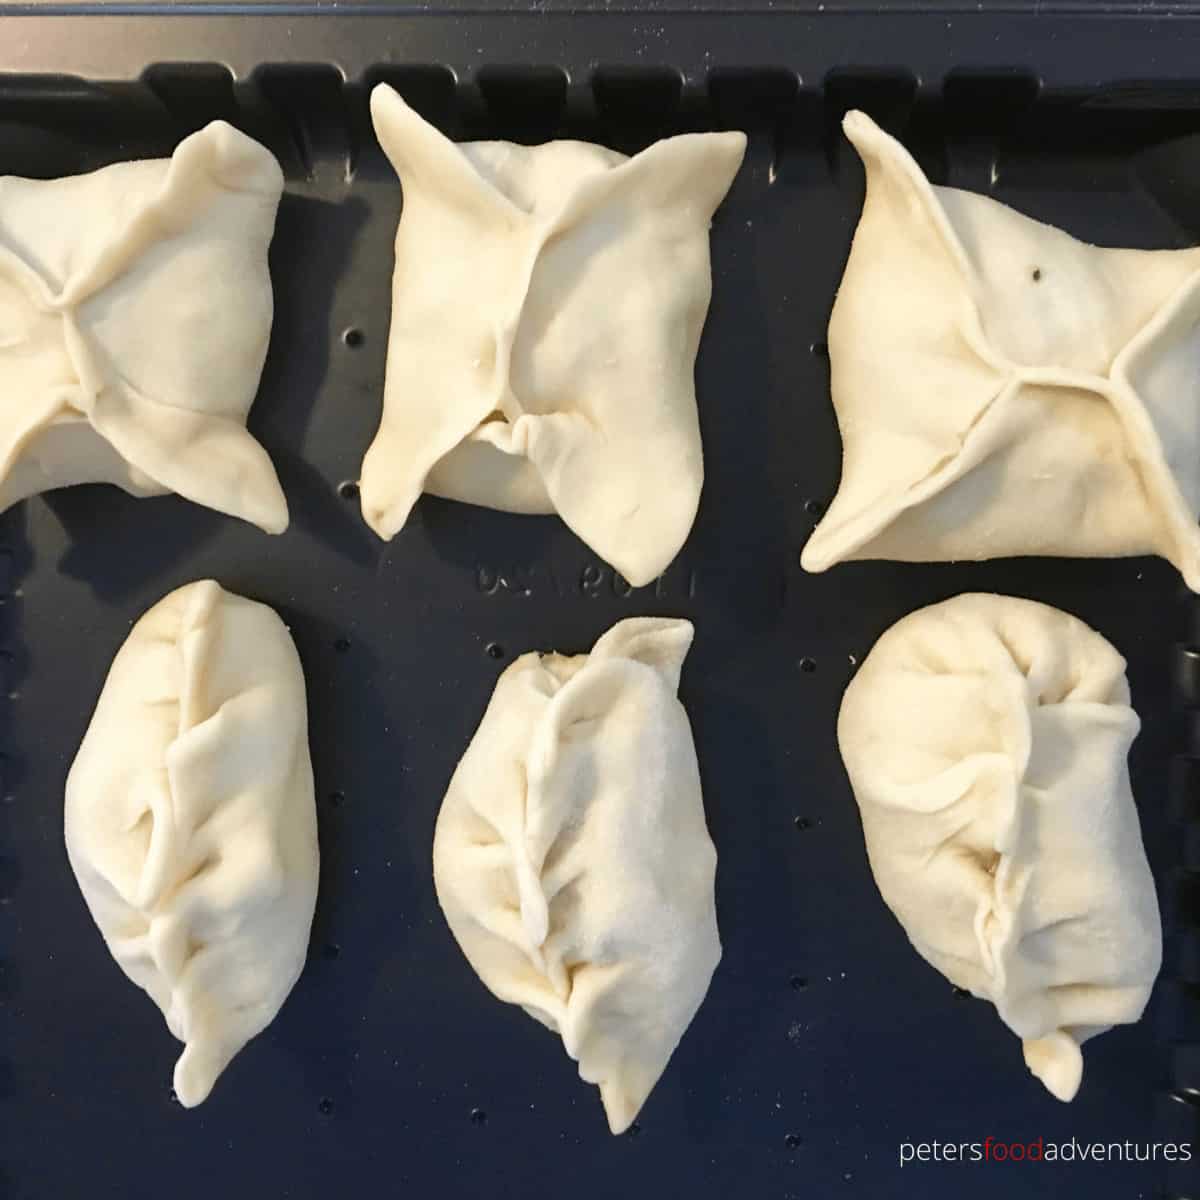 Manti Uyghur Dumplings - Peter's Food Adventures